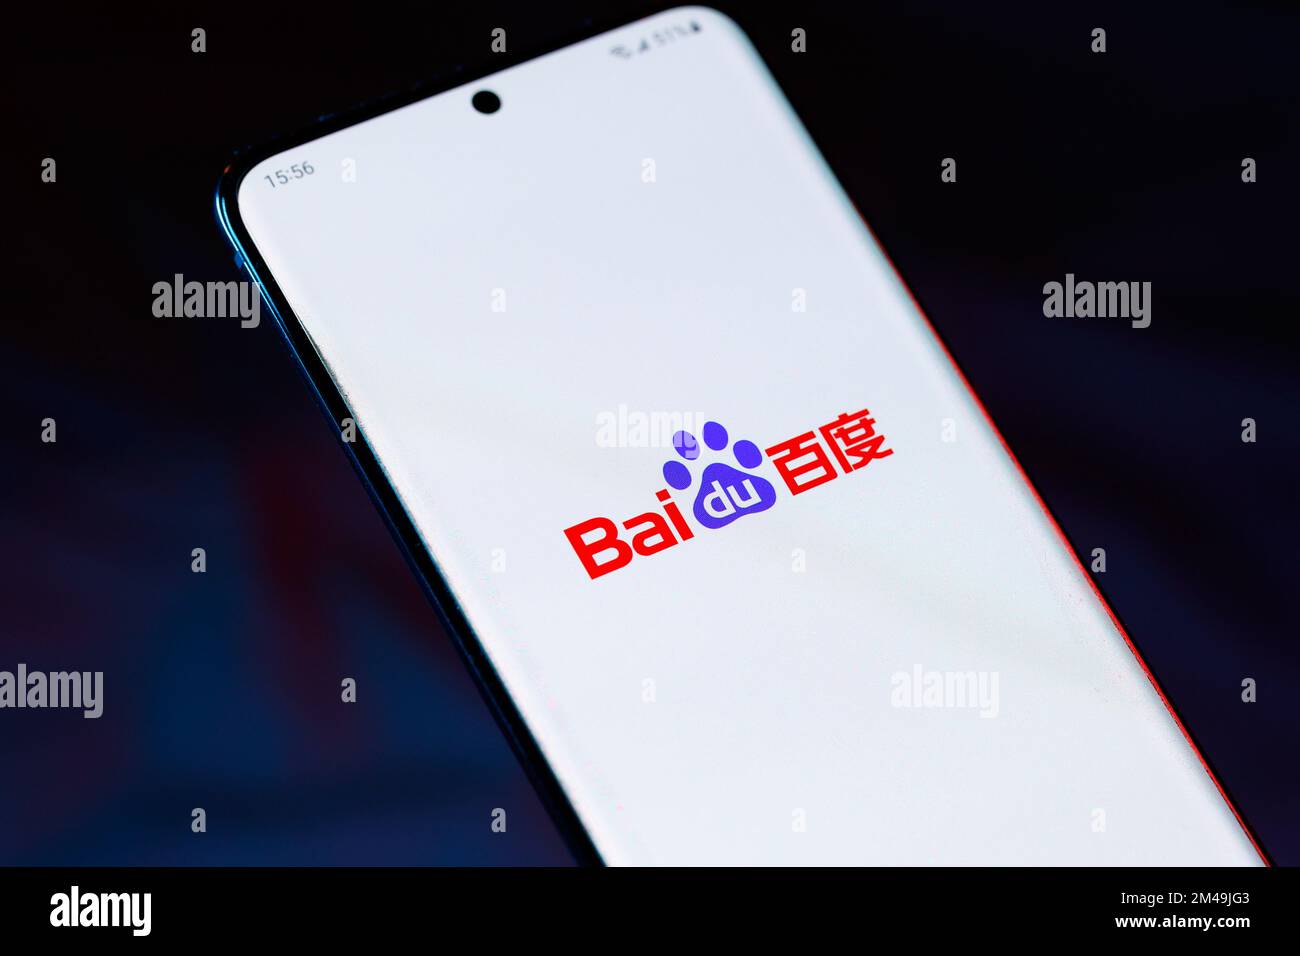 Logo de Baidu 百度 sur un smartphone. Baidu est une société chinoise de technologie Internet et ai. Banque D'Images